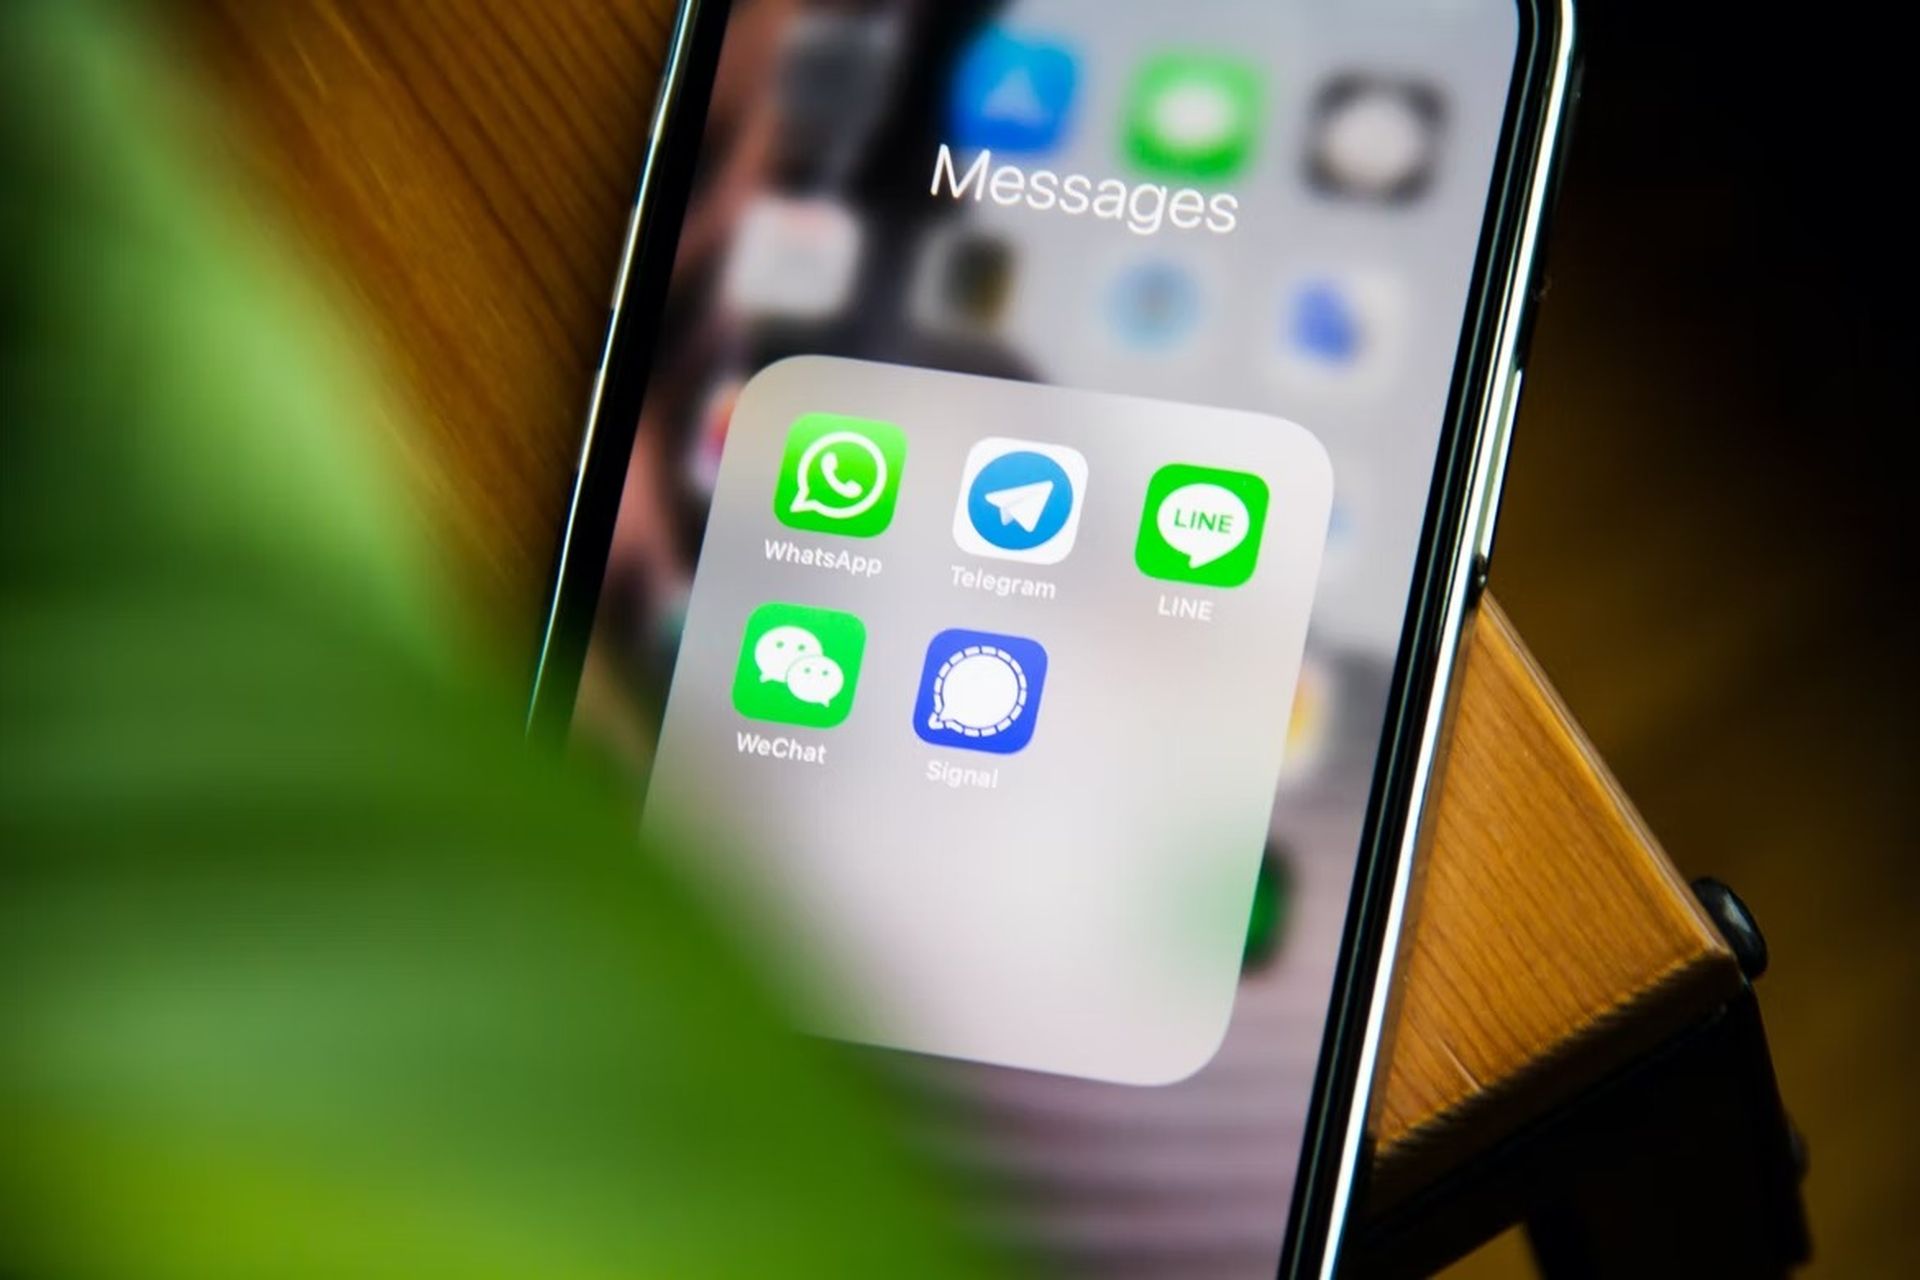 WhatsApp прекратит поддержку iOS 10 и iOS 11 к концу 2022 года. Новое предупреждение, обнаруженное WABetaInfo, призывает пользователей iPhone обновить свое программное обеспечение, чтобы продолжать использовать WhatsApp после 24 октября.